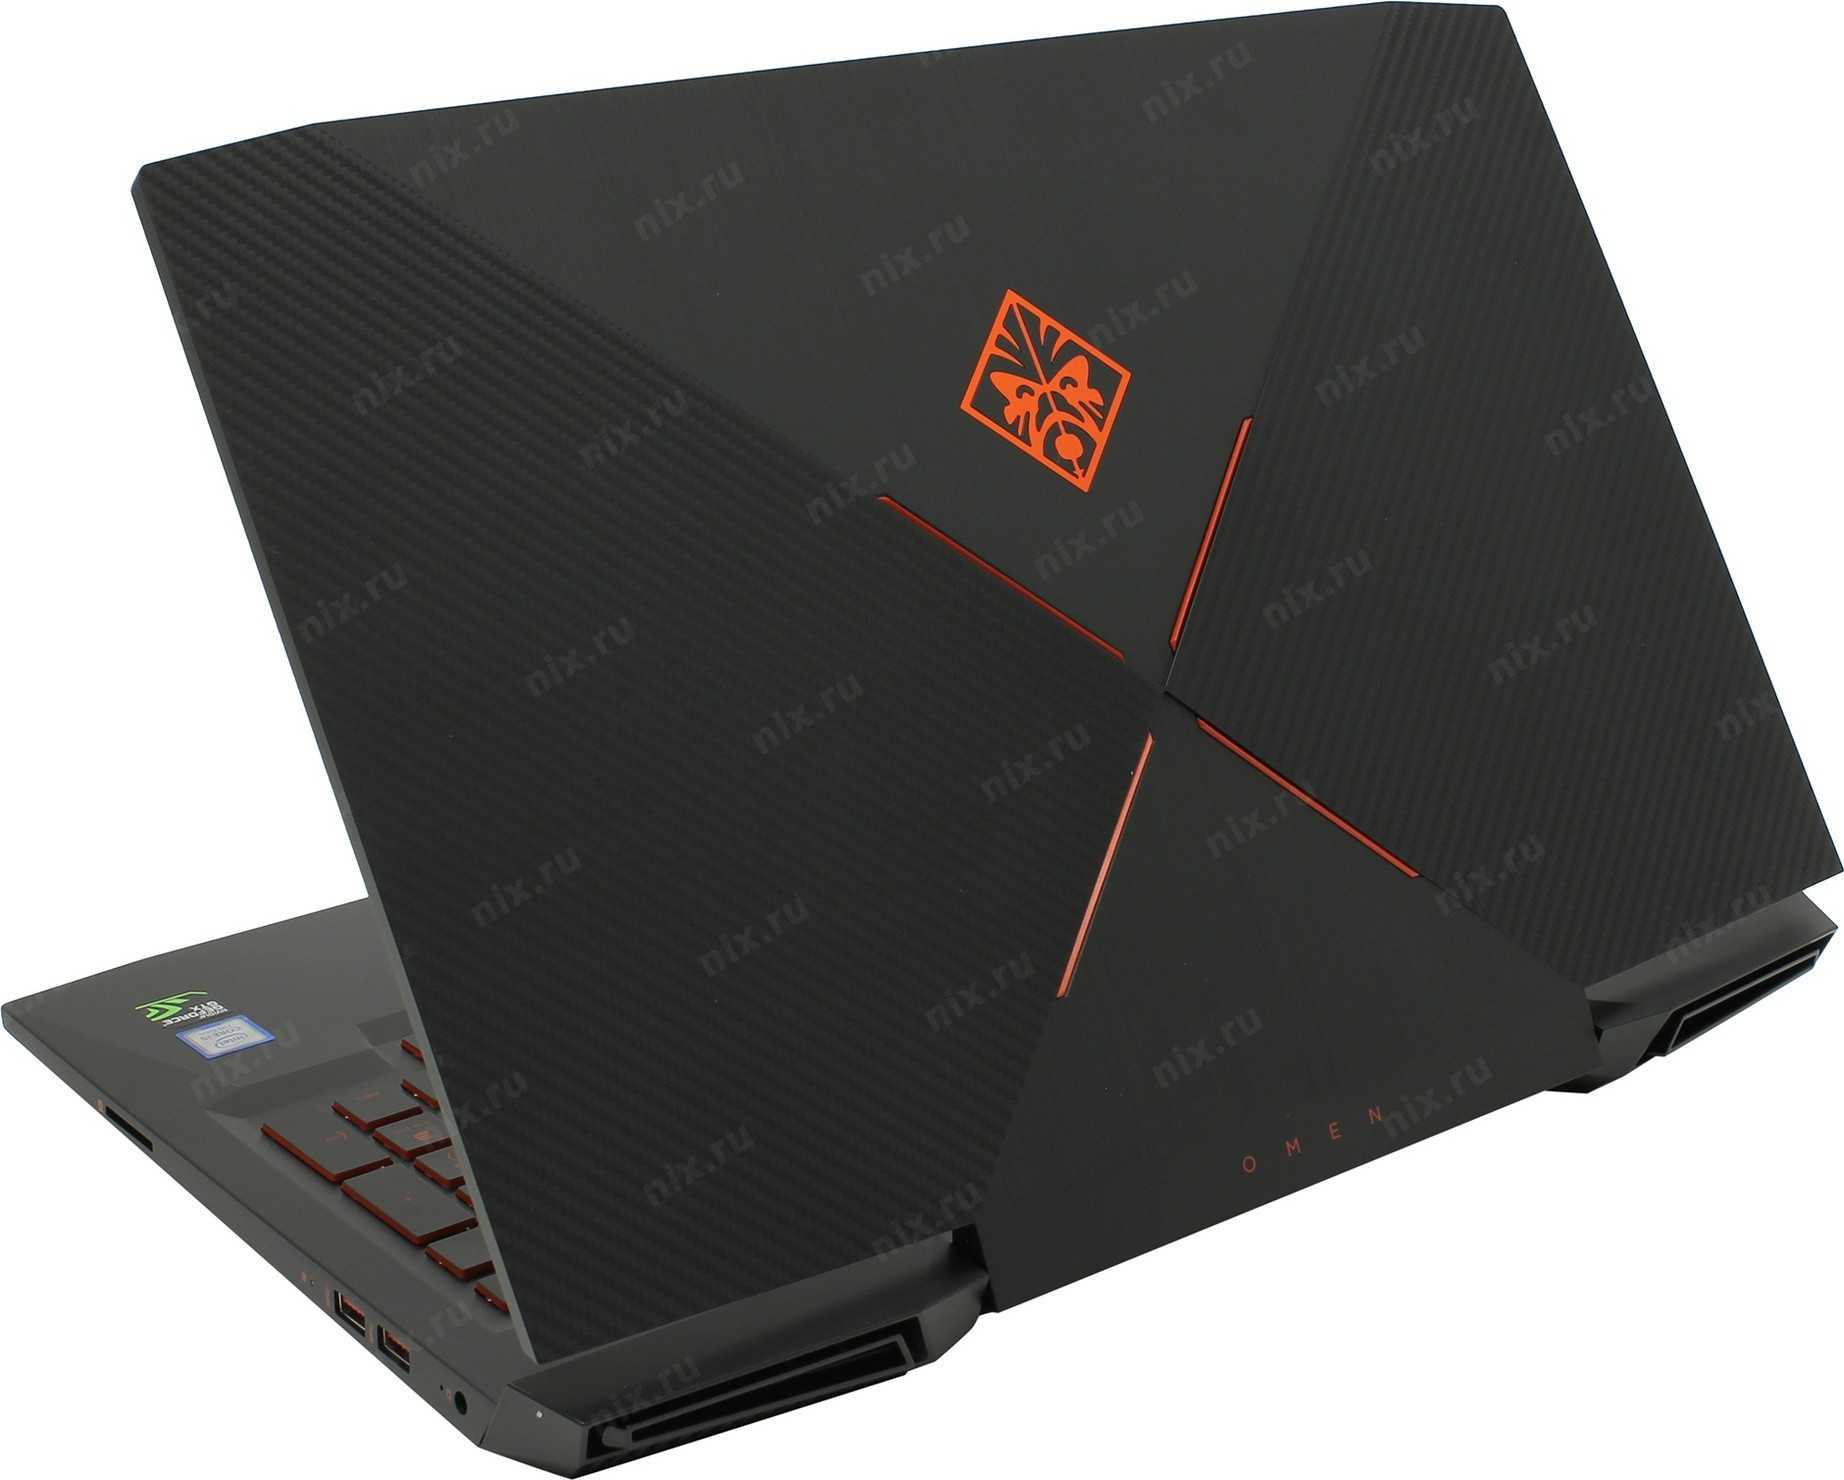 Ноутбук HP Omen 15-5103ur (N3W86EA) Black - подробные характеристики обзоры видео фото Цены в интернет-магазинах где можно купить ноутбук HP Omen 15-5103ur (N3W86EA) Black